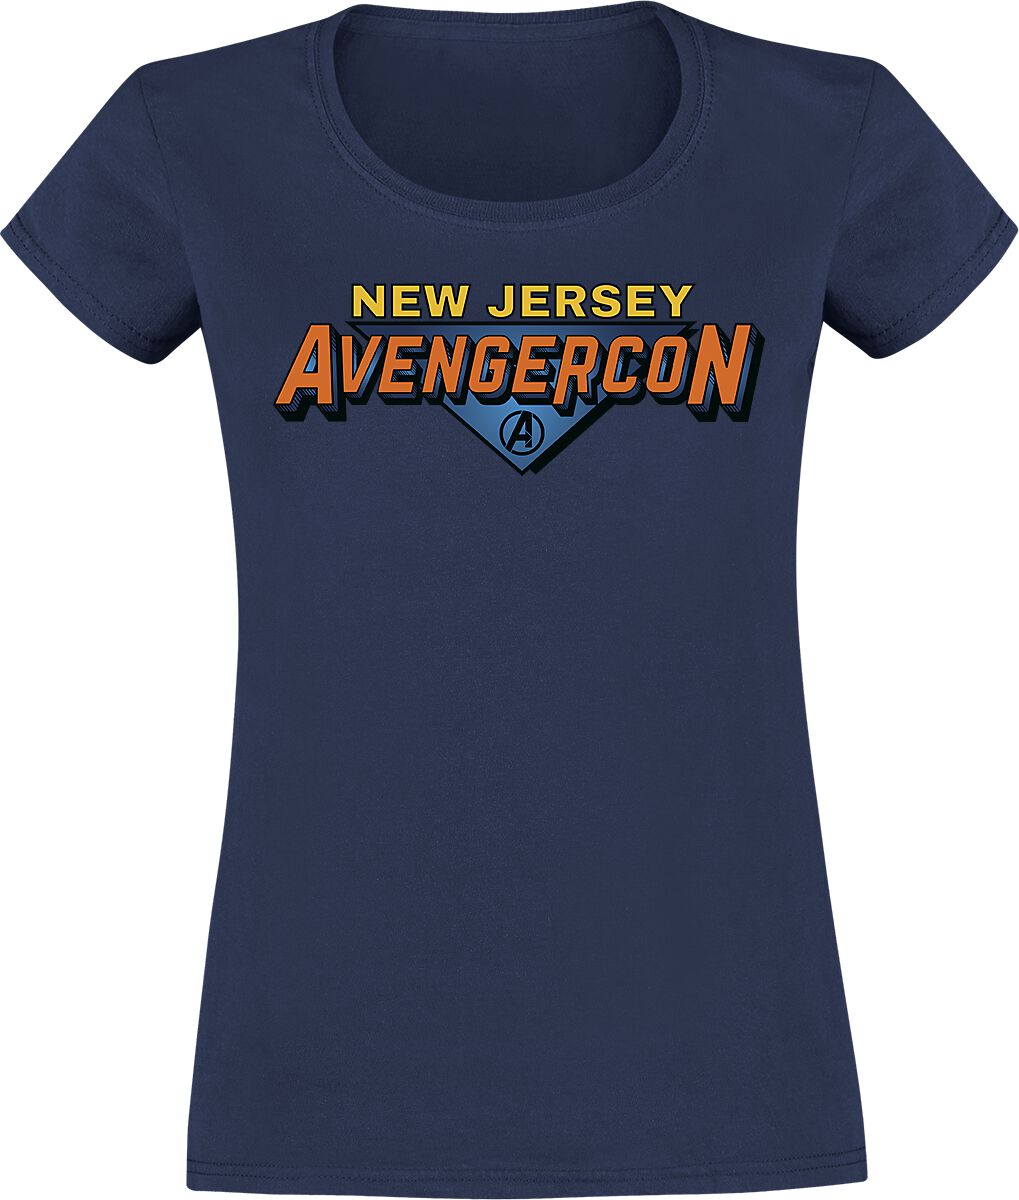 T-Shirt Manches courtes de Ms. Marvel - Avengercon - S à XL - pour Femme - bleu